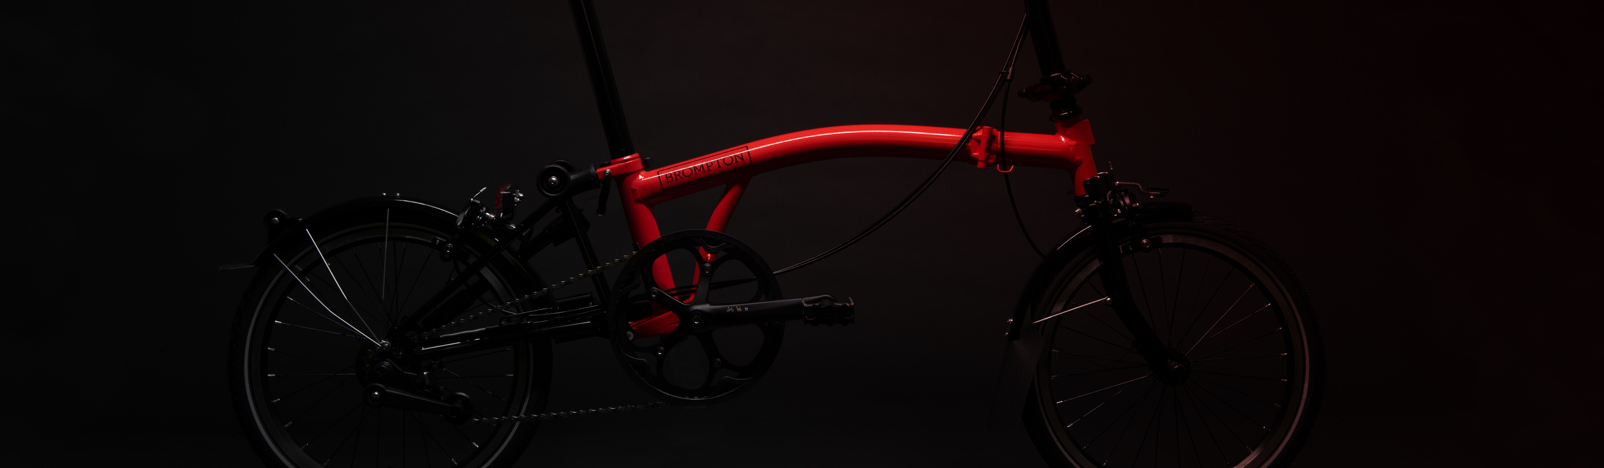 Brompton Bicycle, Black Edition, Back In Black, Dark - Hybrid Bicycle - HD Wallpaper 